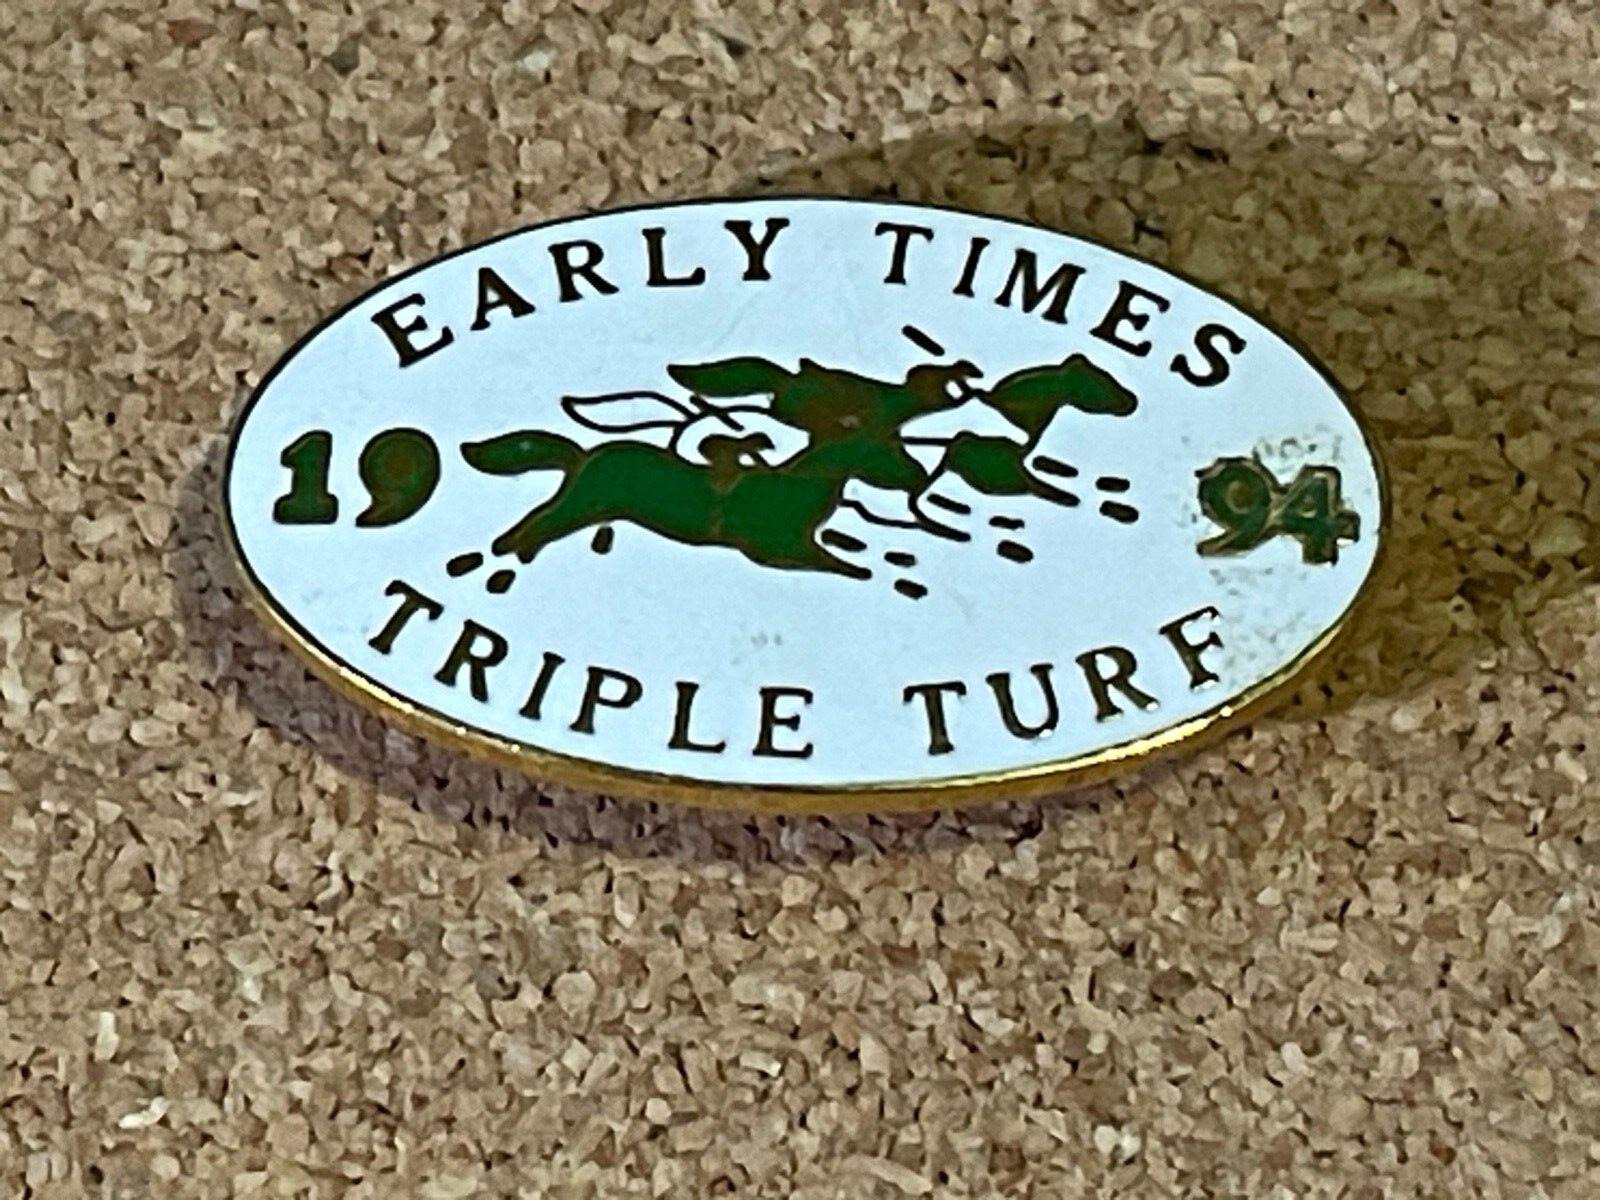 1994 Early Times Triple Turf Pin